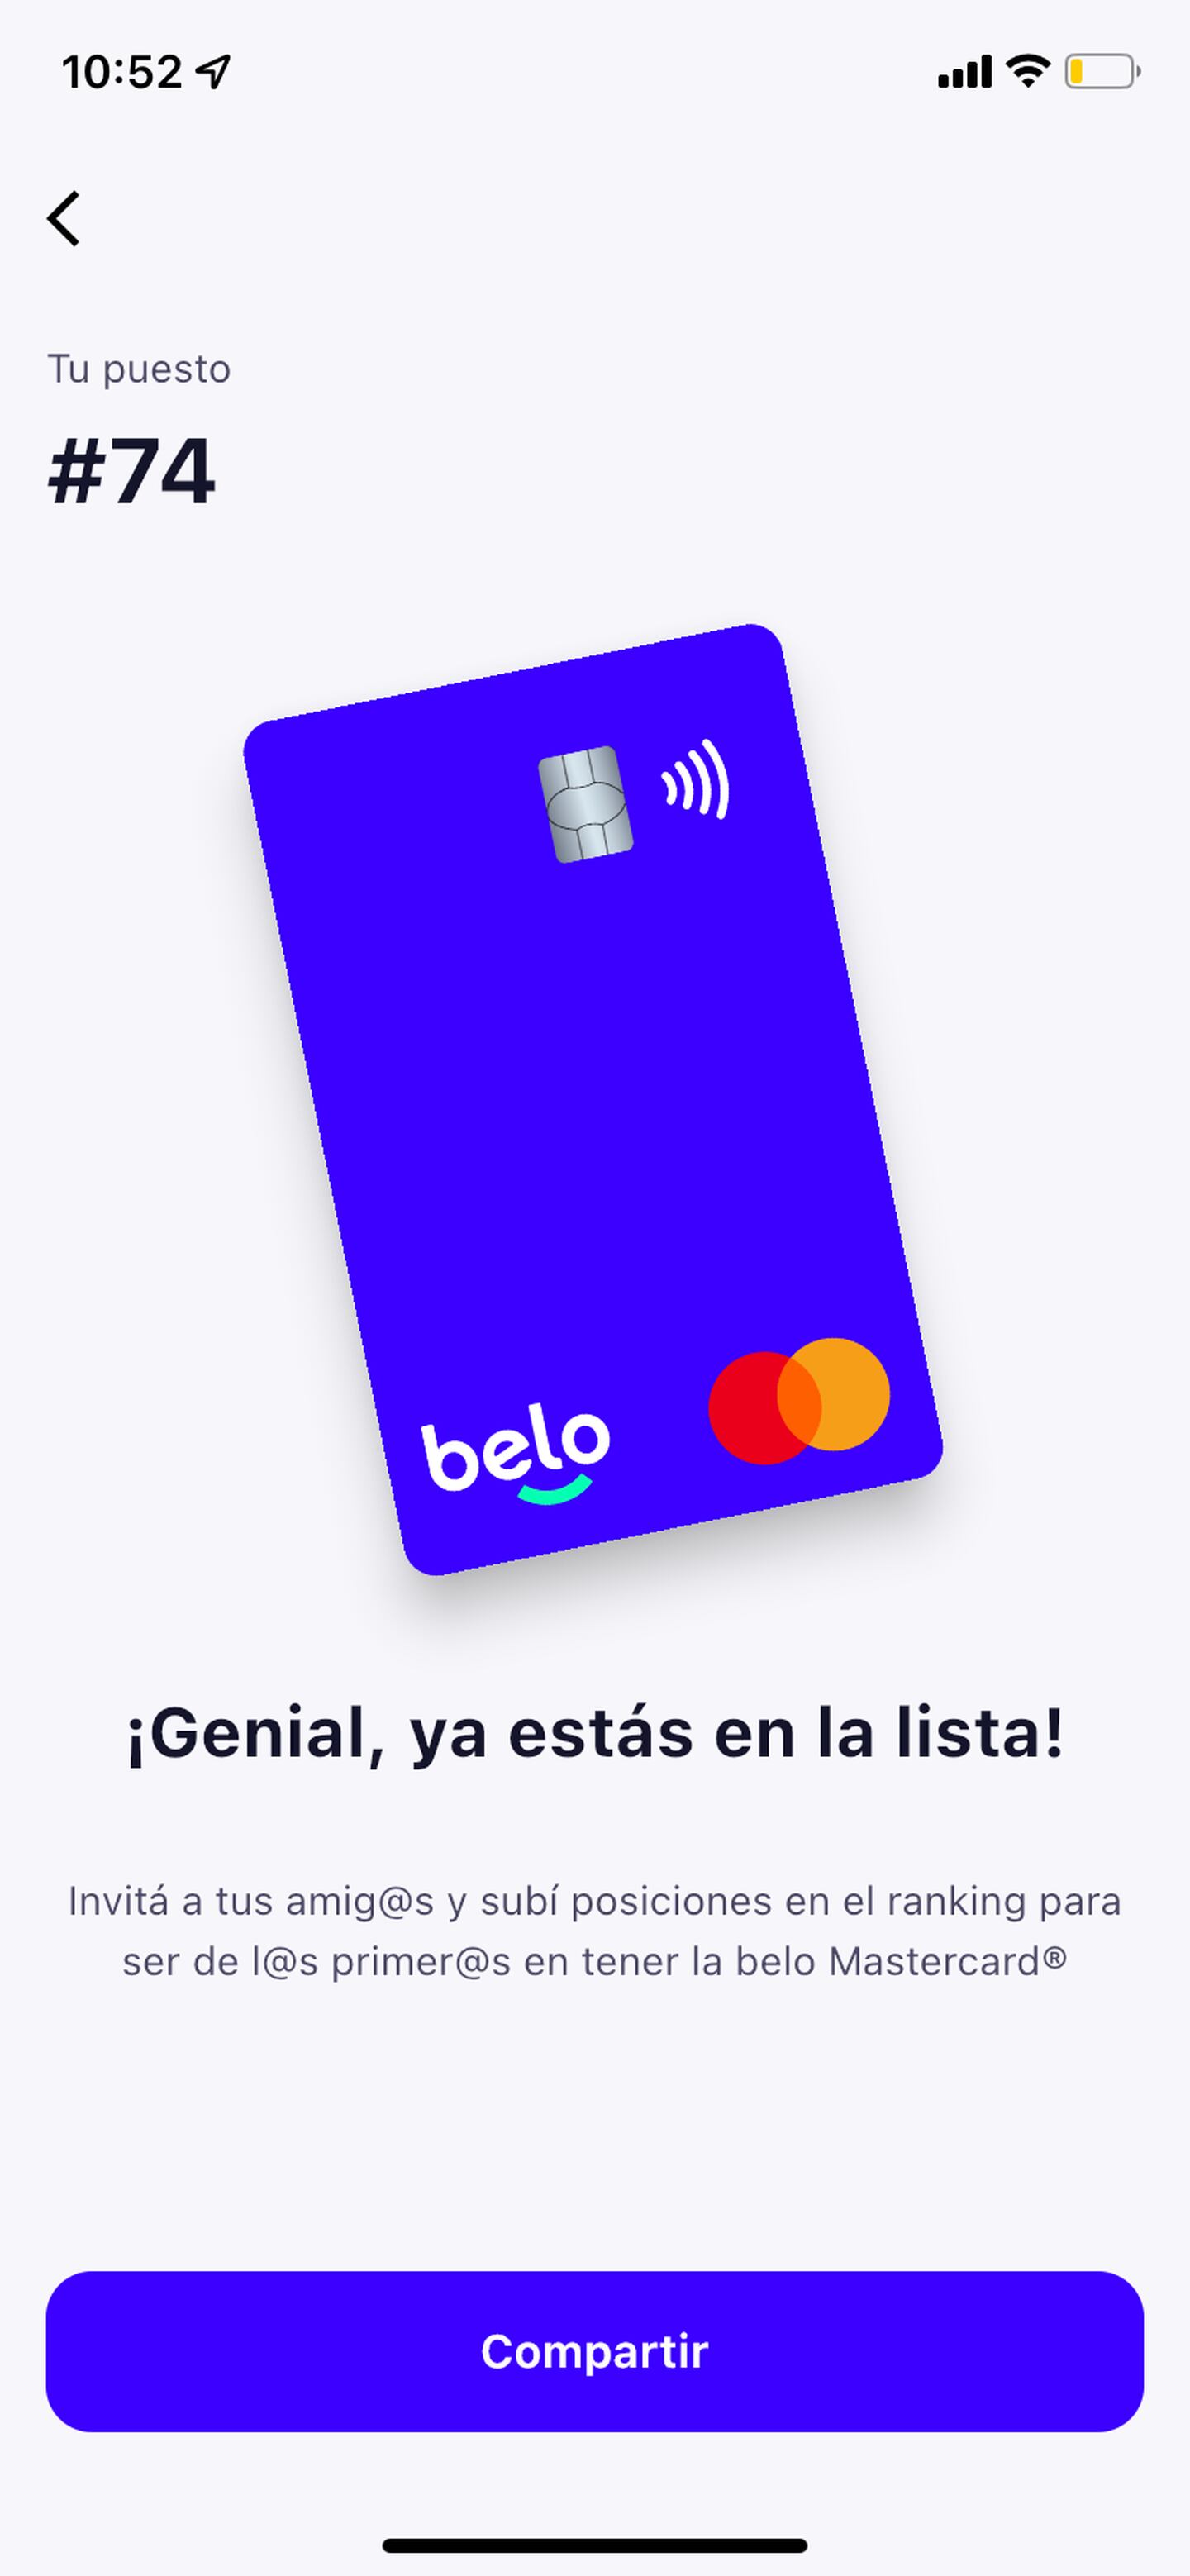 Permite ingresar y retirar pesos argentinos desde una cuenta bancaria con la posibilidad de intercambiarlos por bitcoin.dfd